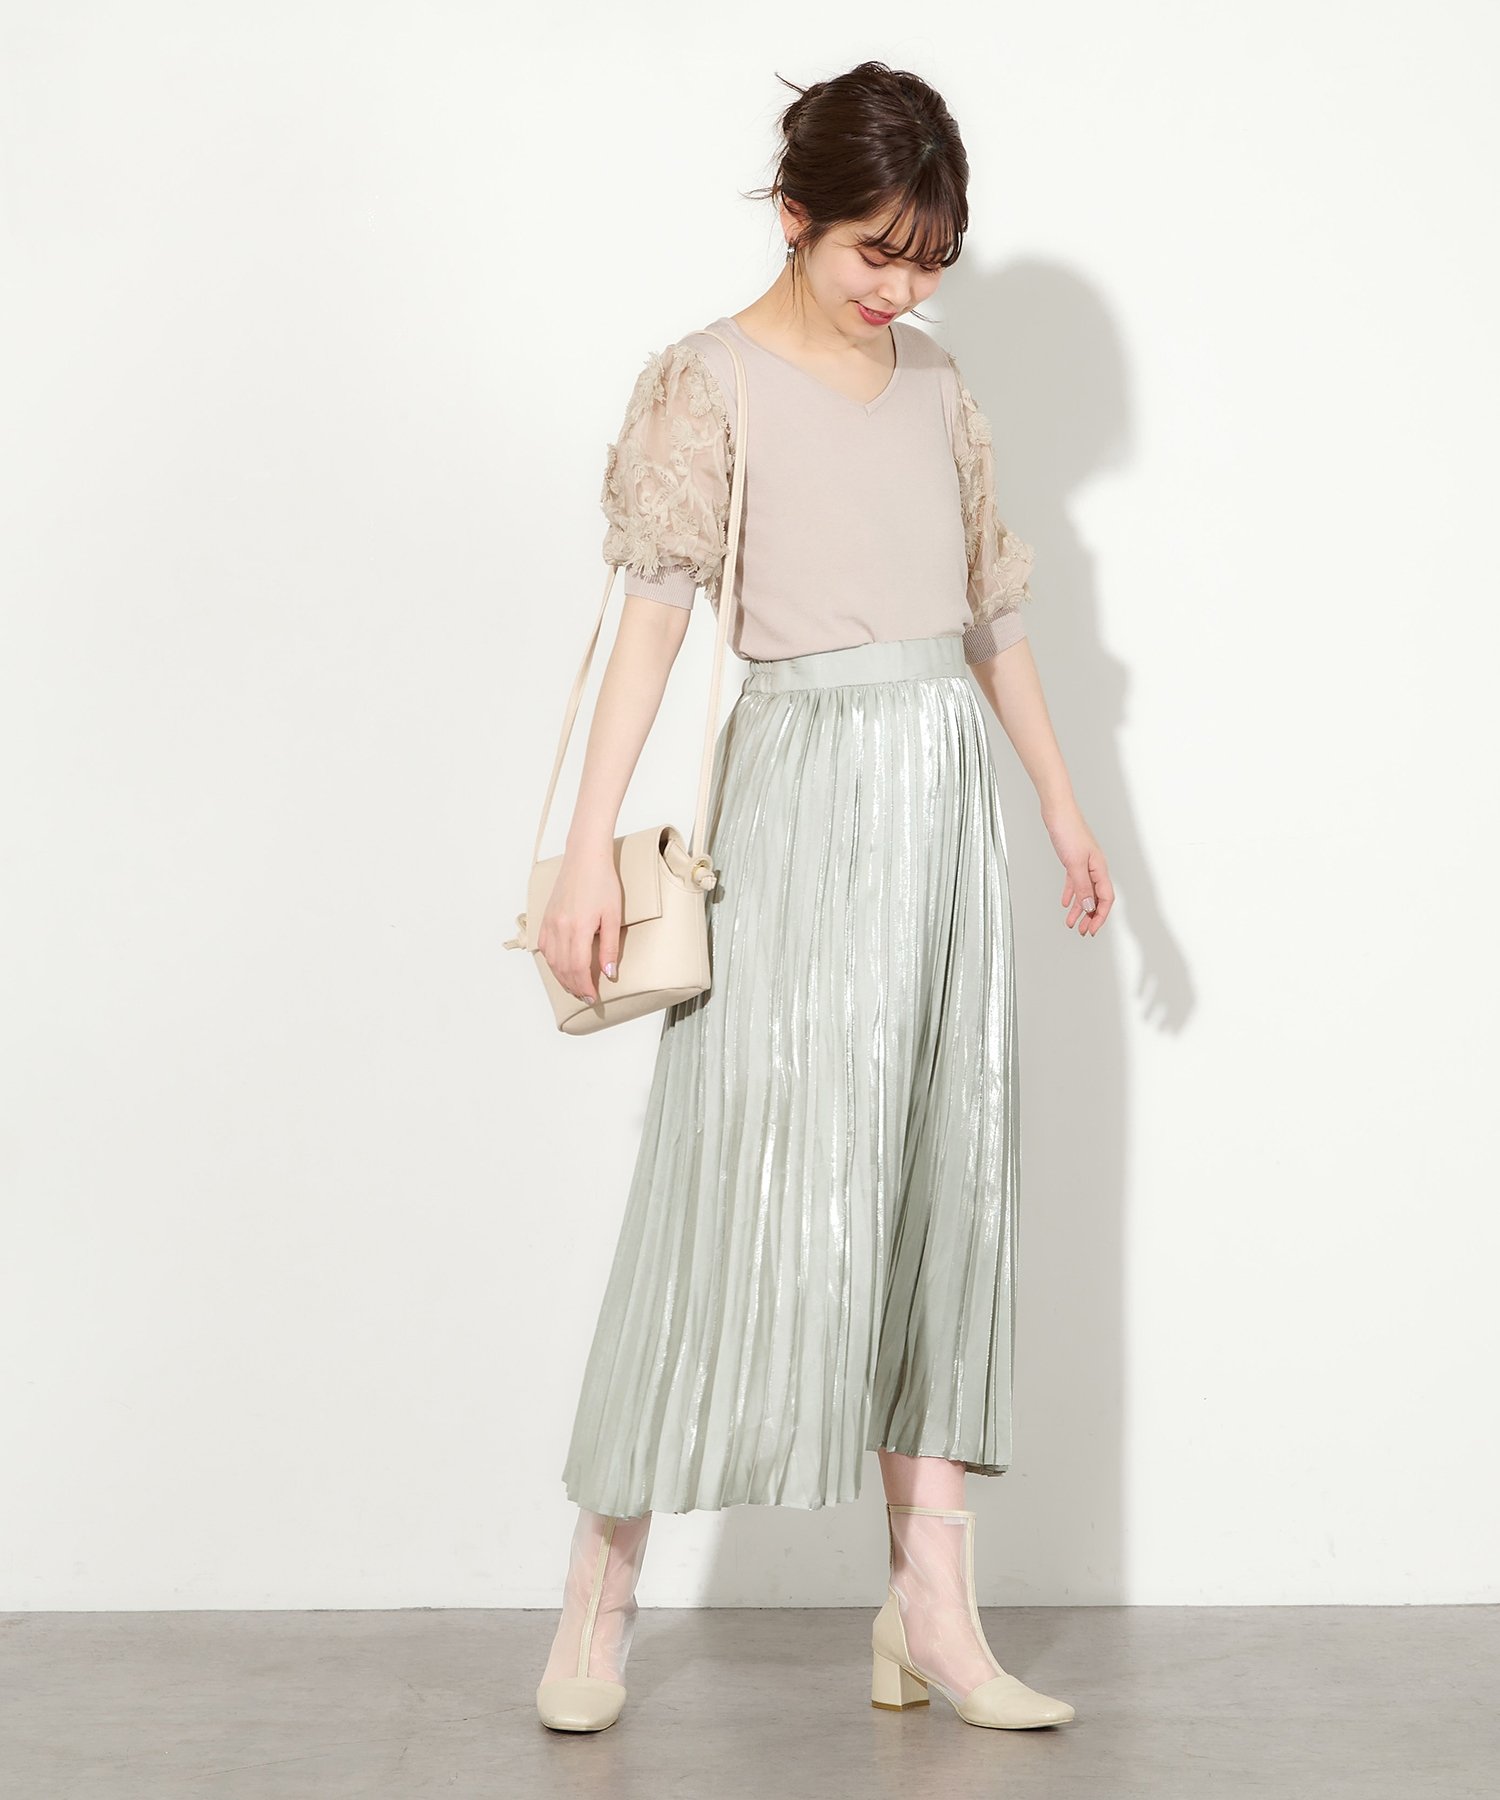 natural couture(ナチュラルクチュール) オーロラプリーツスカート